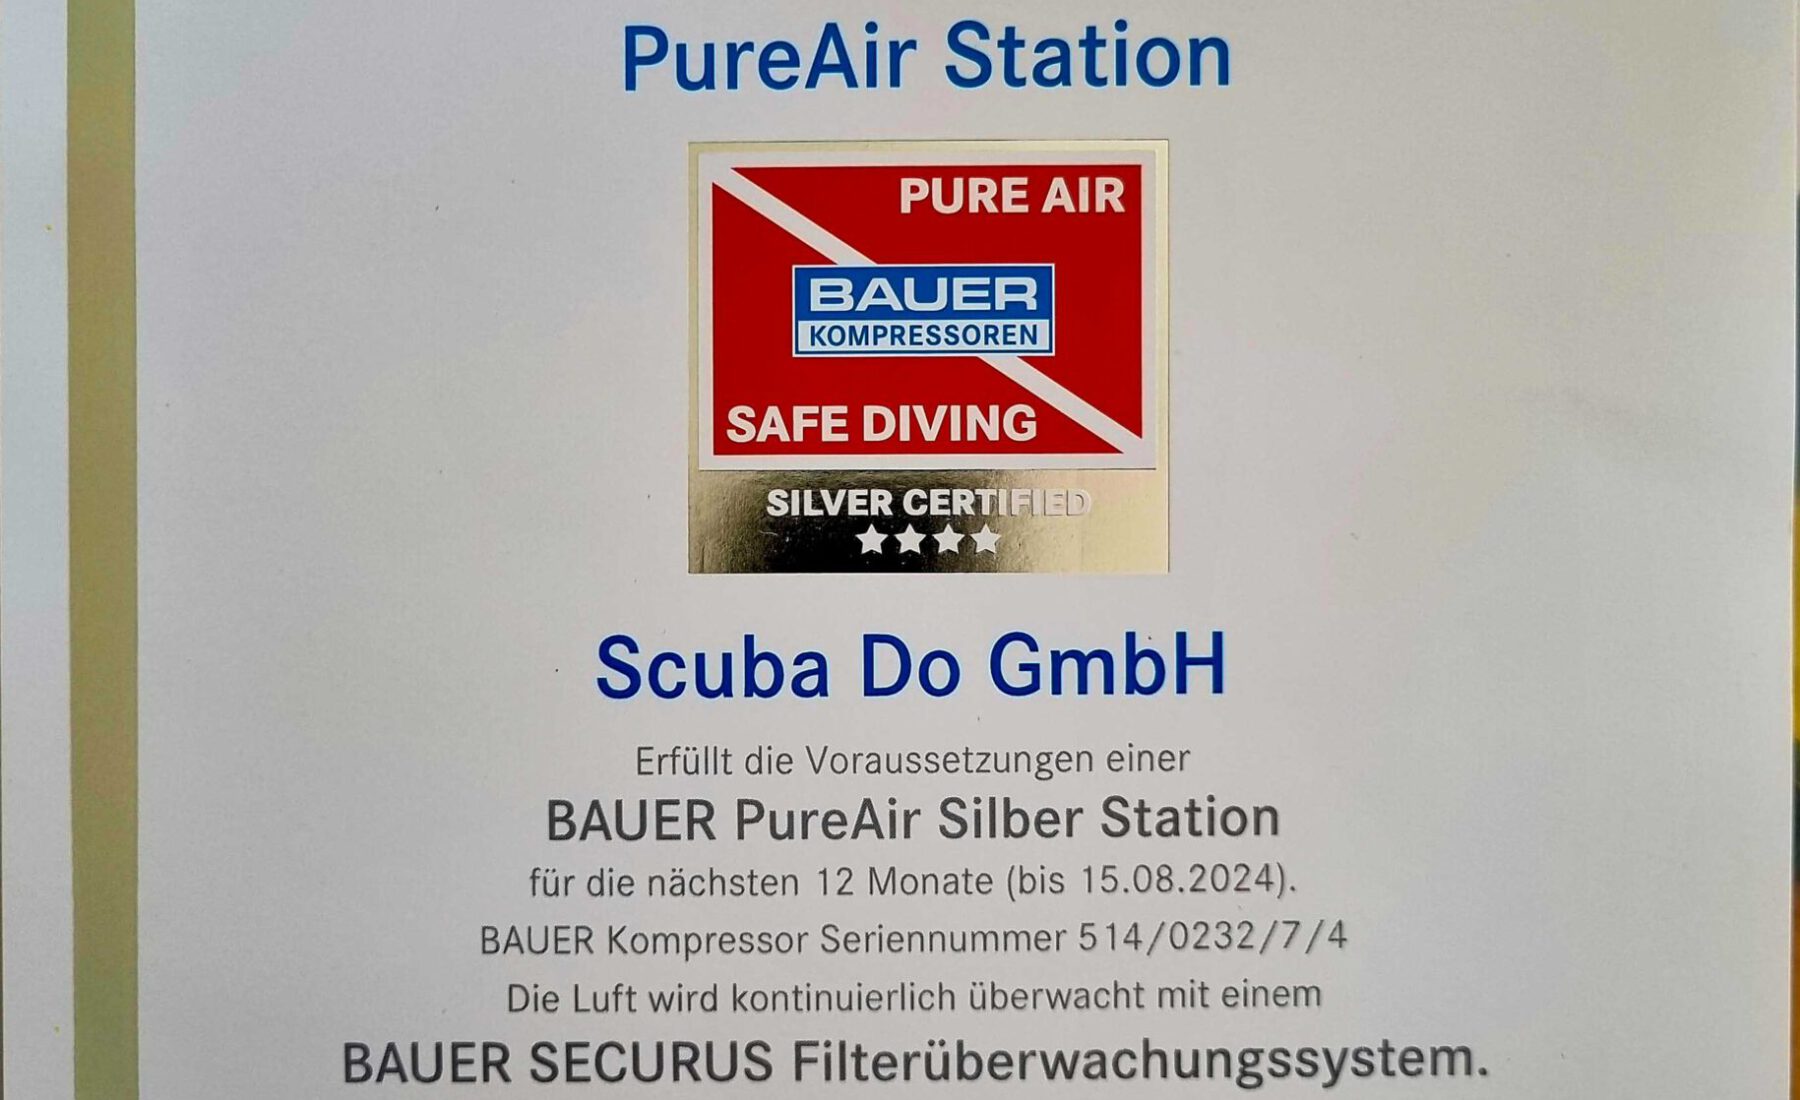 Scuba Do ist auch in 2023/2024 eine Bauer PureAir Station